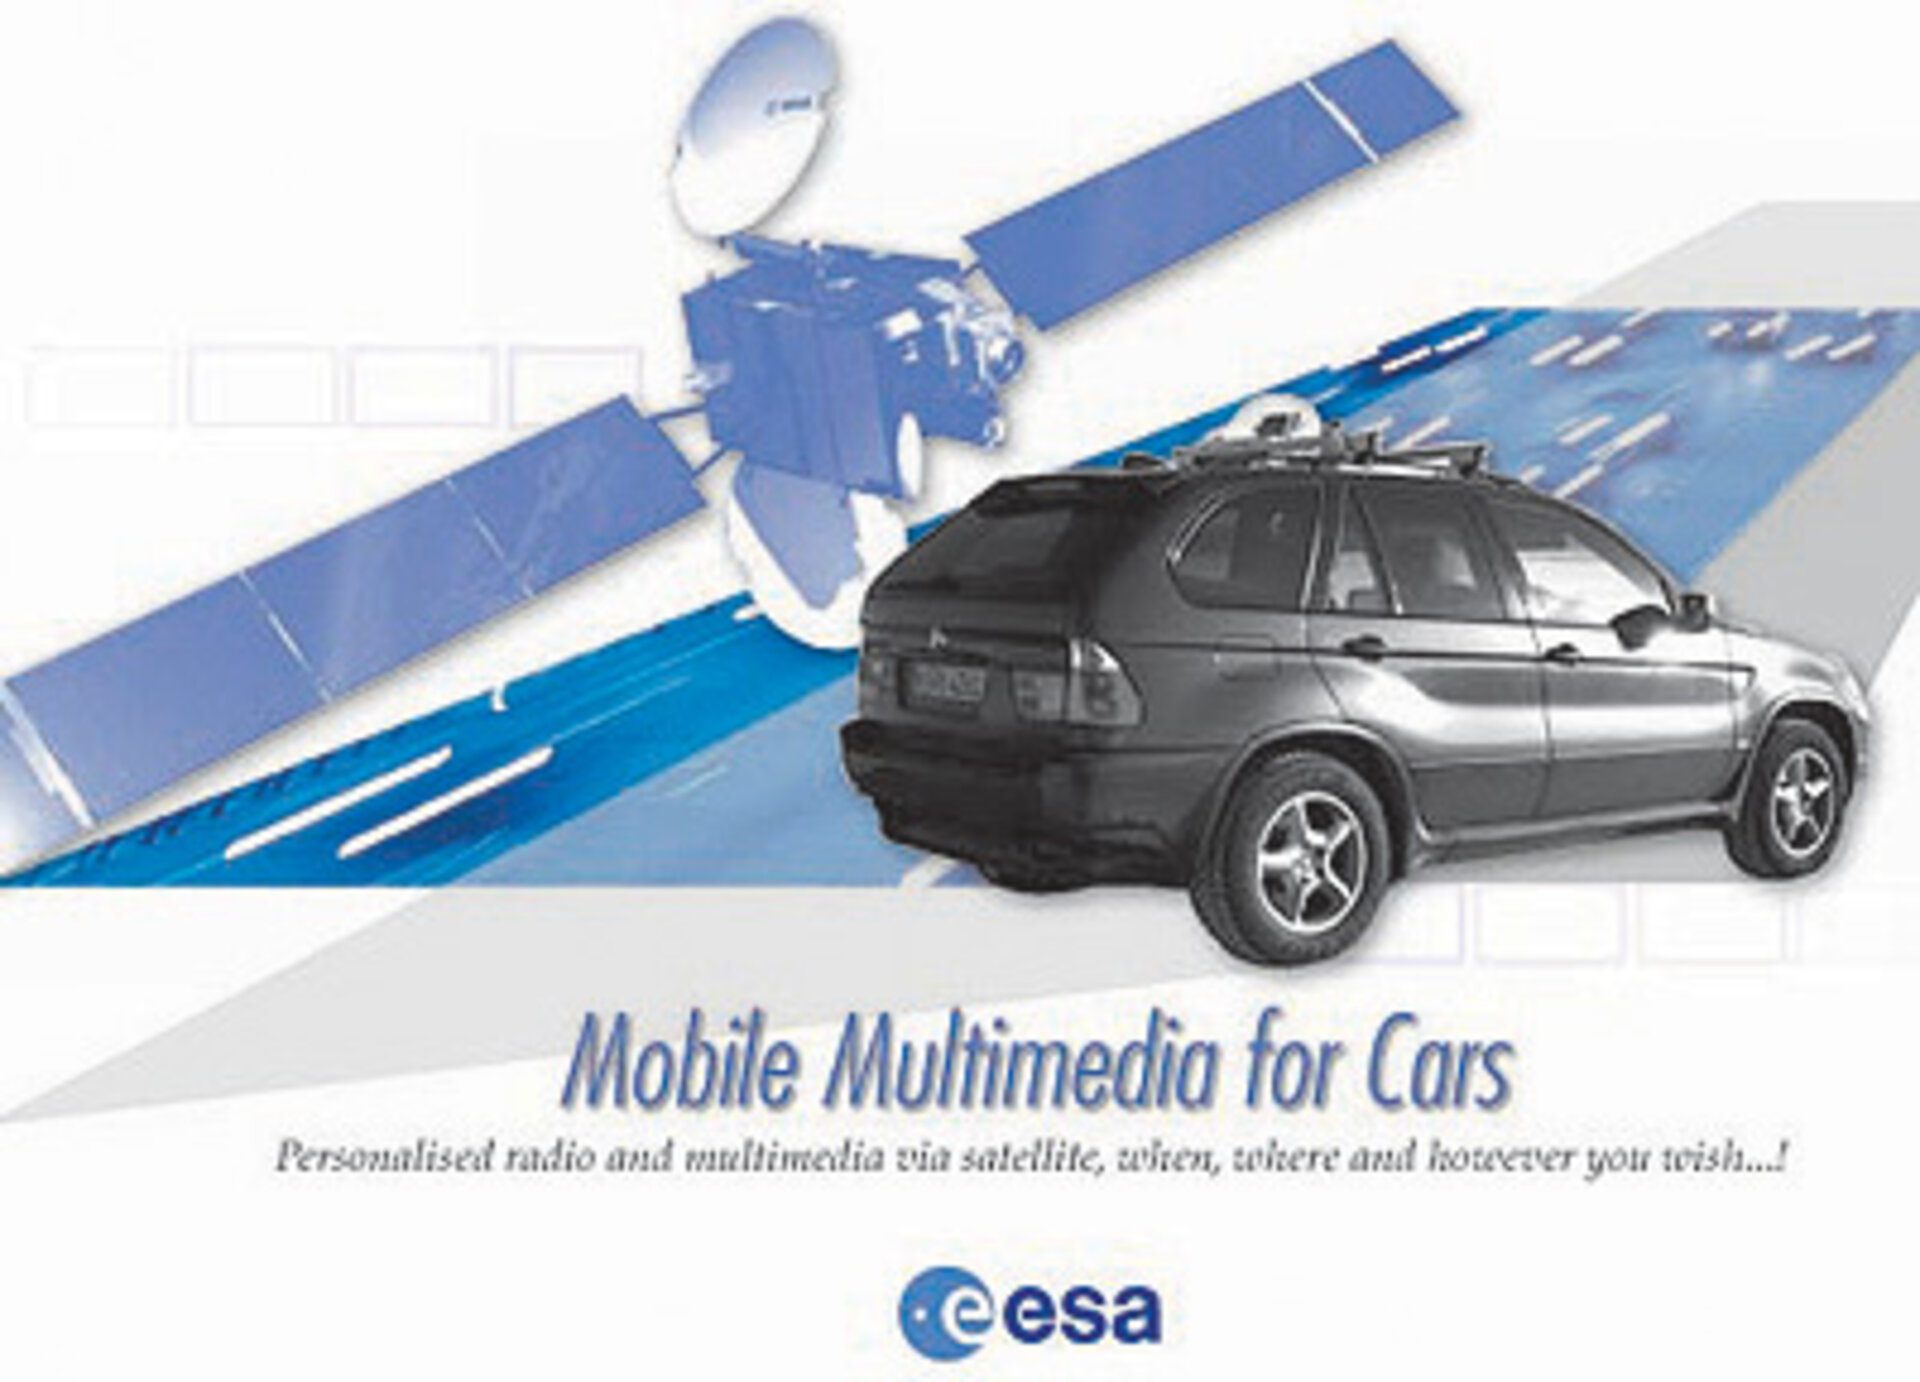 Multimedia car radio of the future